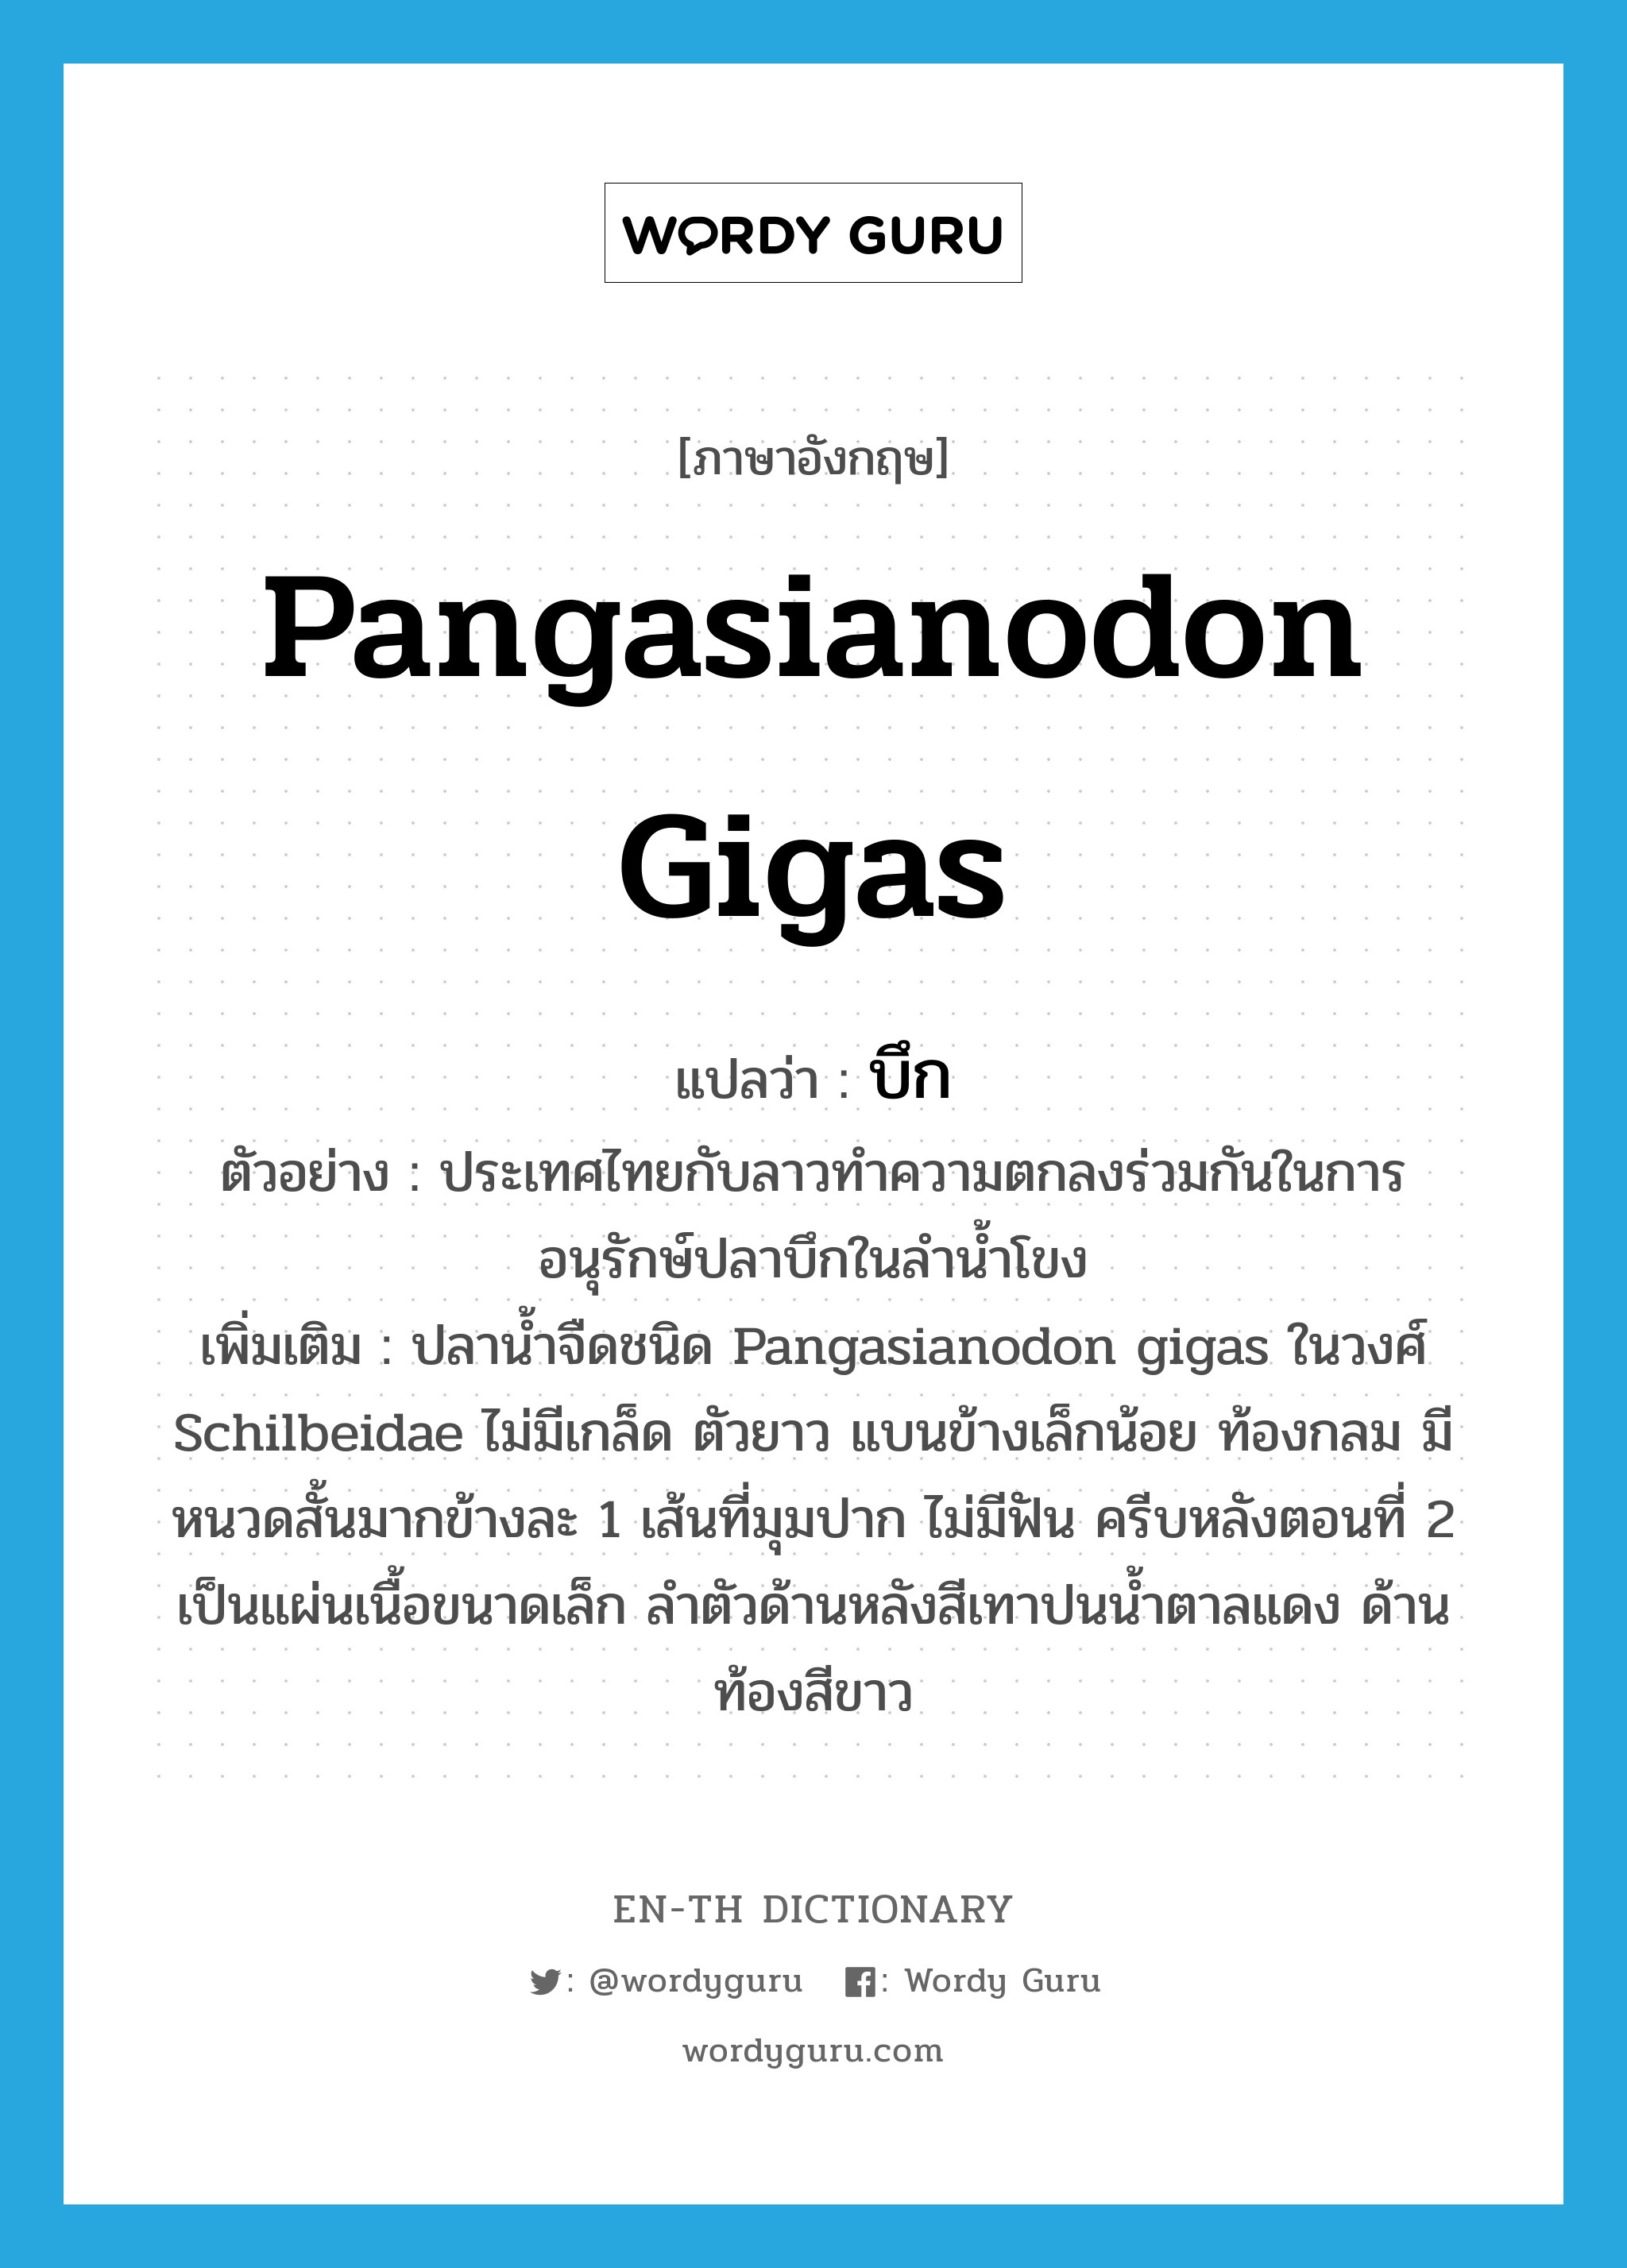 บึก ภาษาอังกฤษ?, คำศัพท์ภาษาอังกฤษ บึก แปลว่า Pangasianodon gigas ประเภท N ตัวอย่าง ประเทศไทยกับลาวทำความตกลงร่วมกันในการอนุรักษ์ปลาบึกในลำน้ำโขง เพิ่มเติม ปลาน้ำจืดชนิด Pangasianodon gigas ในวงศ์ Schilbeidae ไม่มีเกล็ด ตัวยาว แบนข้างเล็กน้อย ท้องกลม มีหนวดสั้นมากข้างละ 1 เส้นที่มุมปาก ไม่มีฟัน ครีบหลังตอนที่ 2 เป็นแผ่นเนื้อขนาดเล็ก ลำตัวด้านหลังสีเทาปนน้ำตาลแดง ด้านท้องสีขาว หมวด N